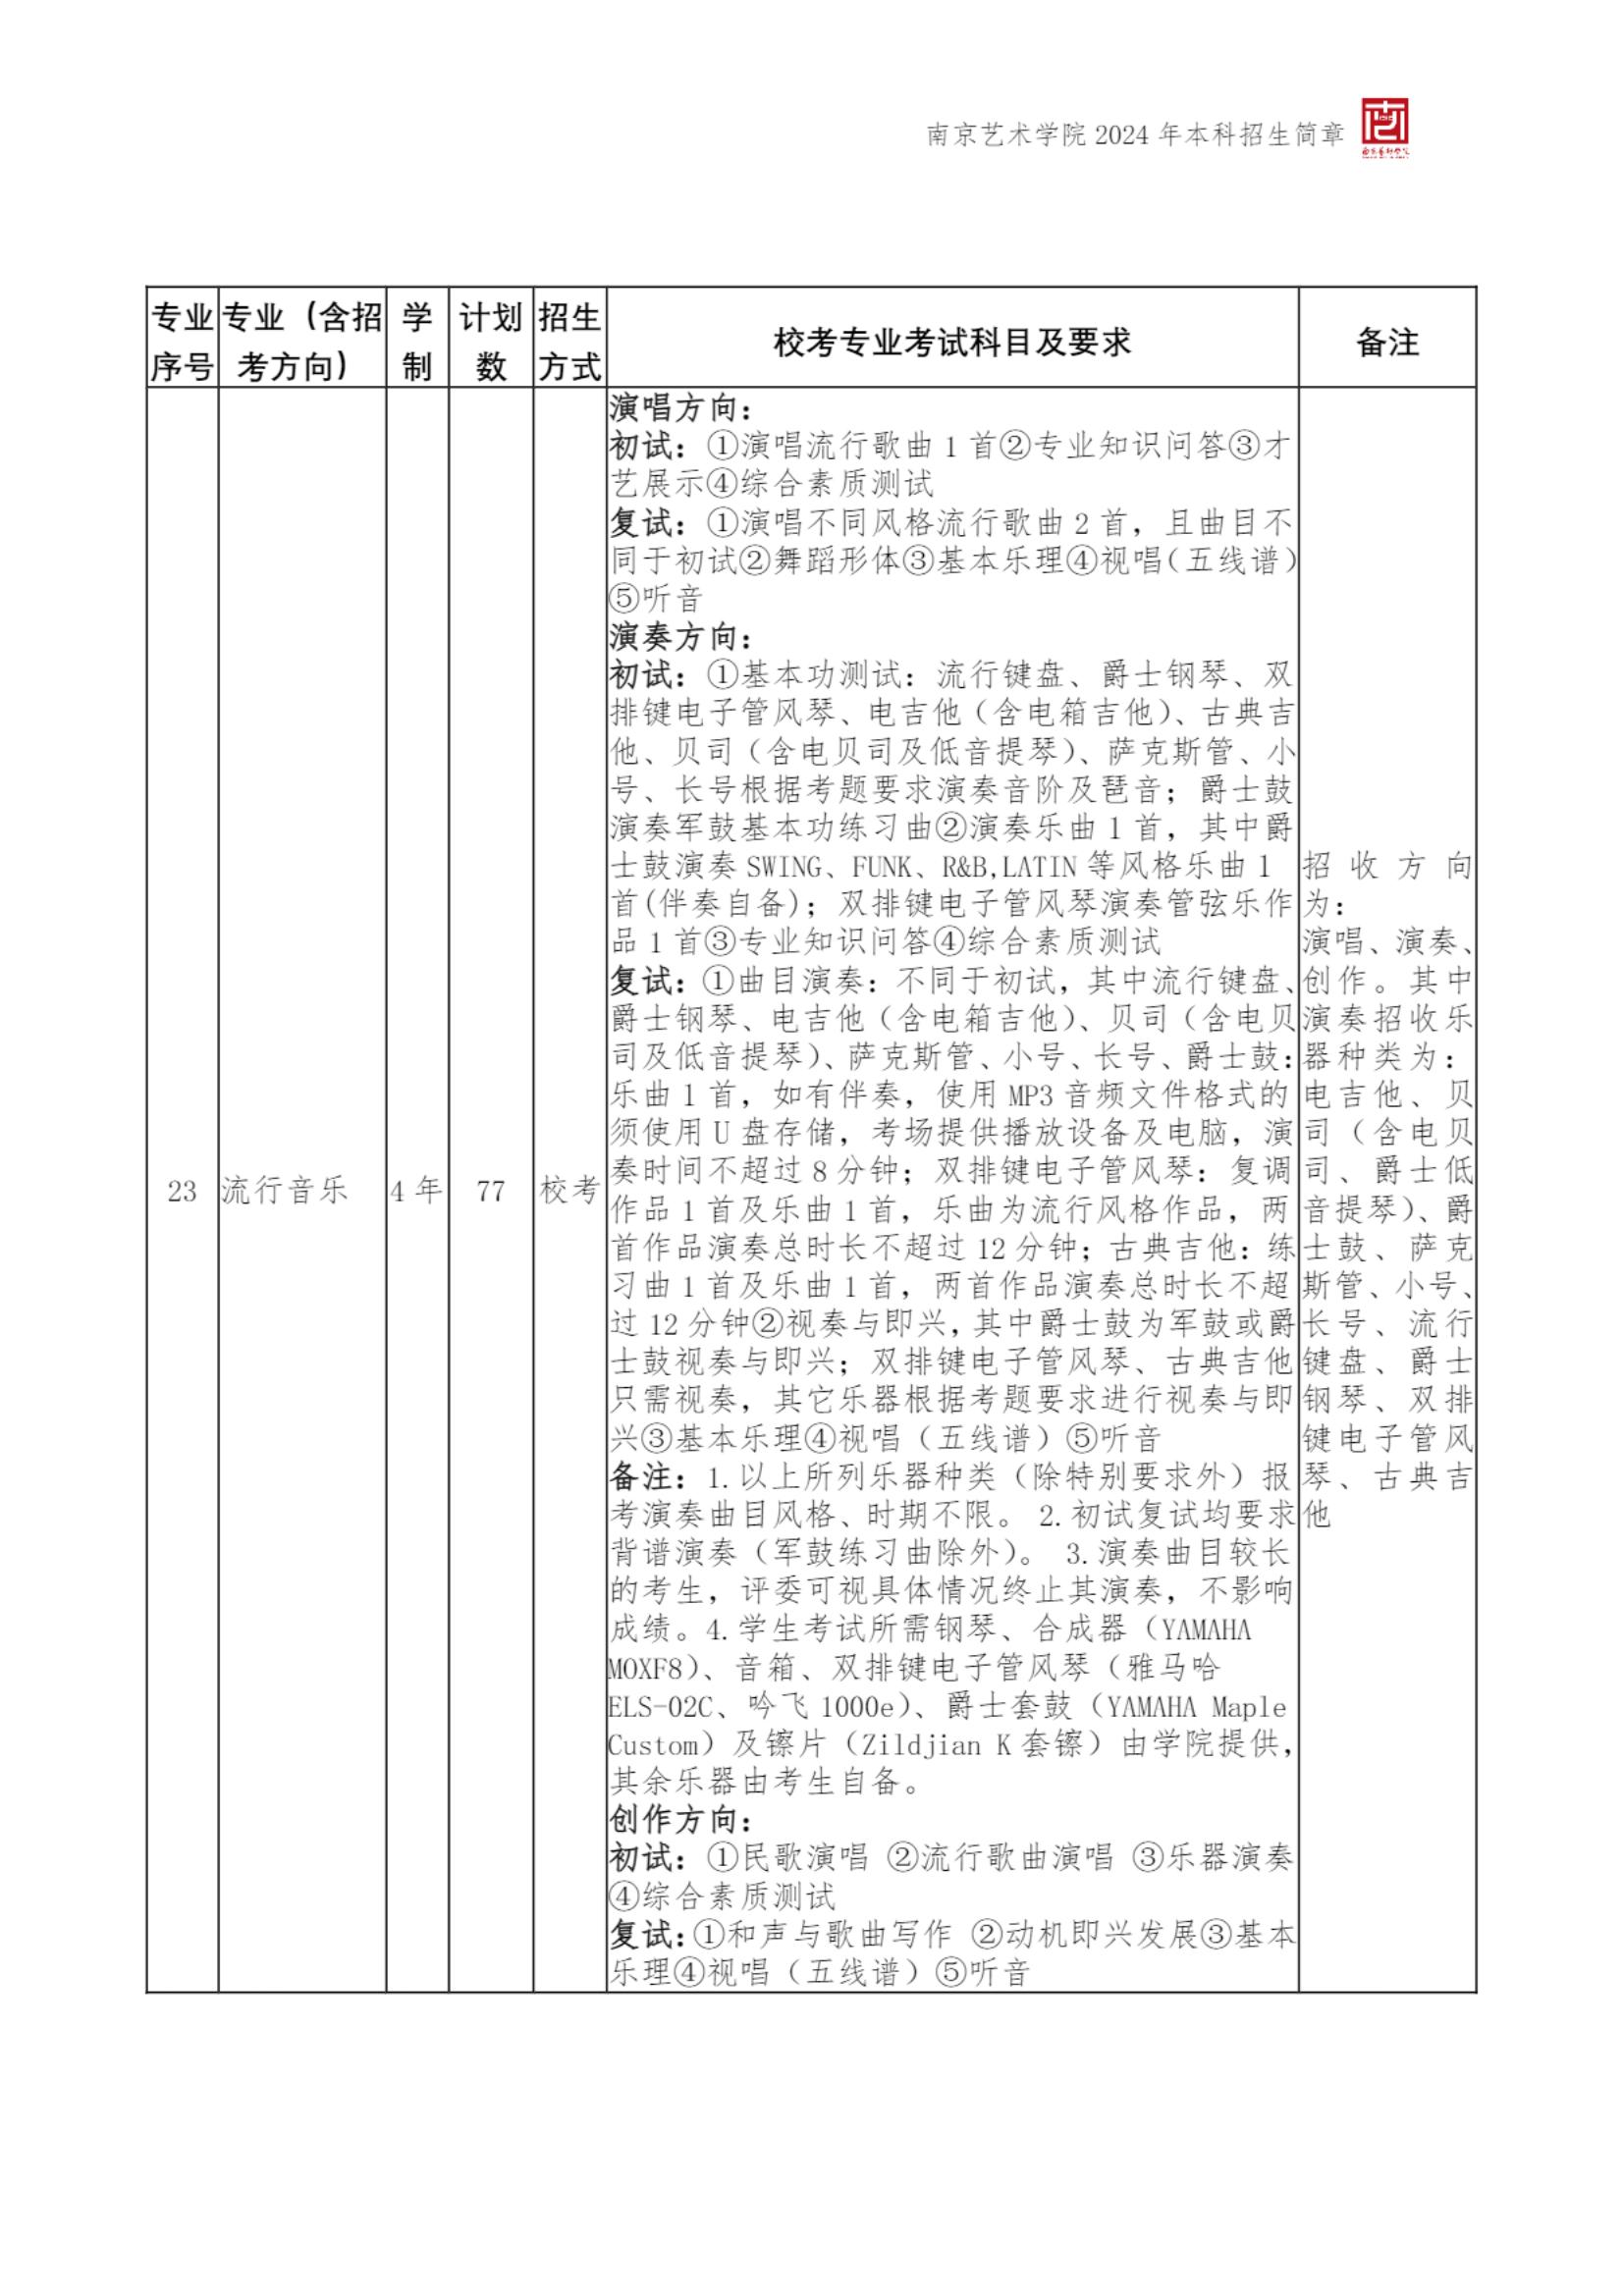 南京艺术学院2024年本科招生简章_09.jpg